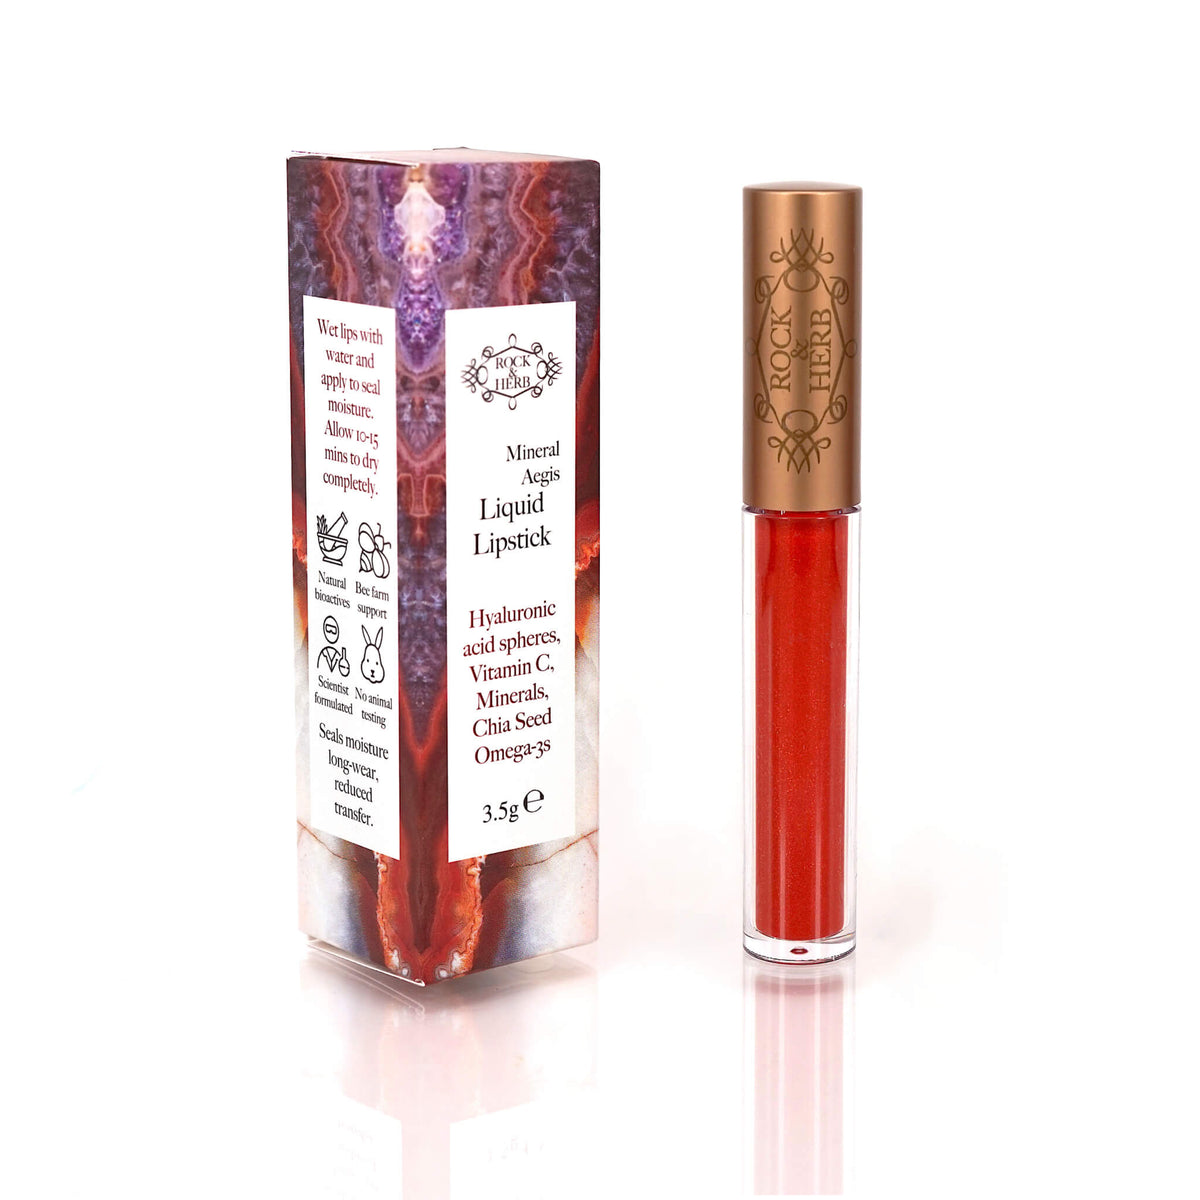 Mineral Aegis Liquid Lipstick